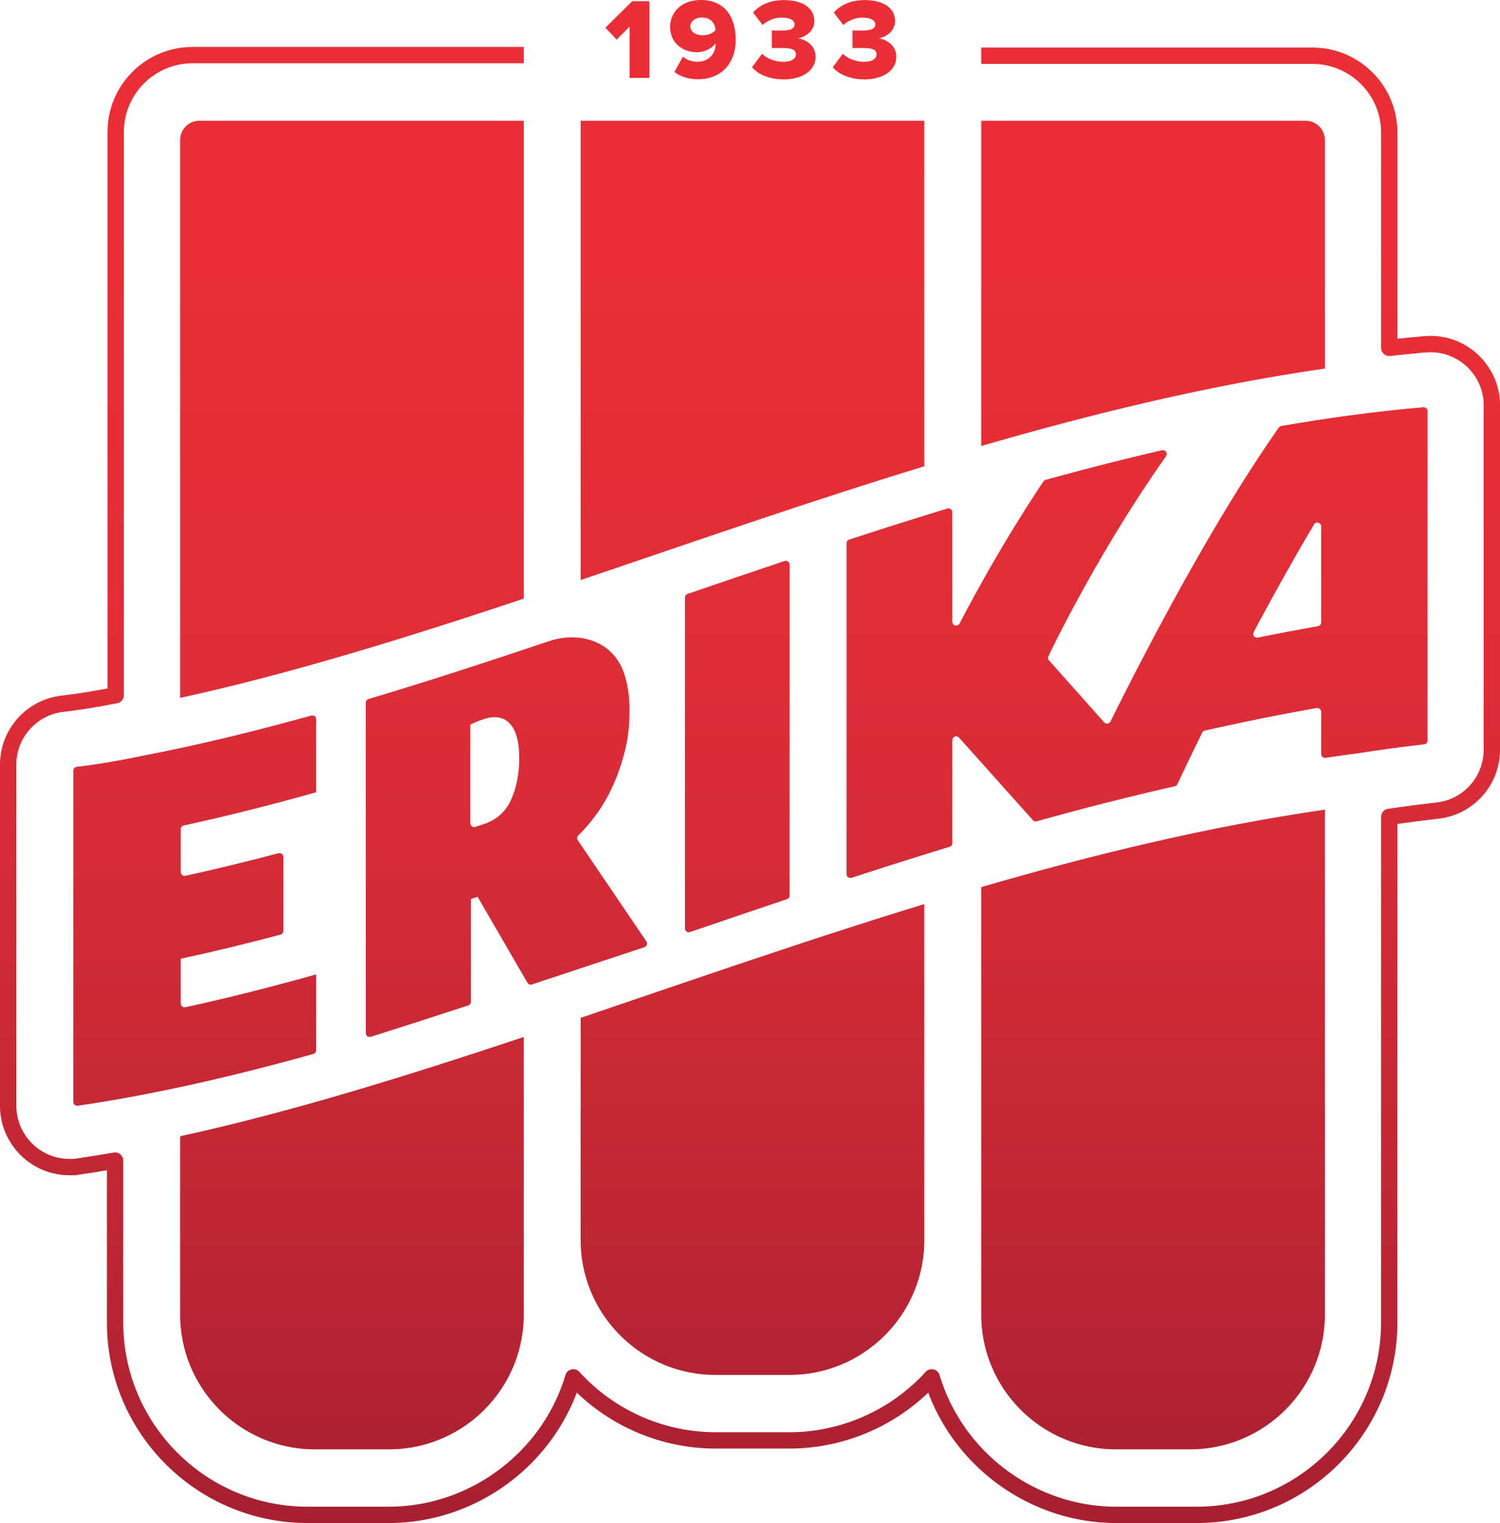 Erika Eis